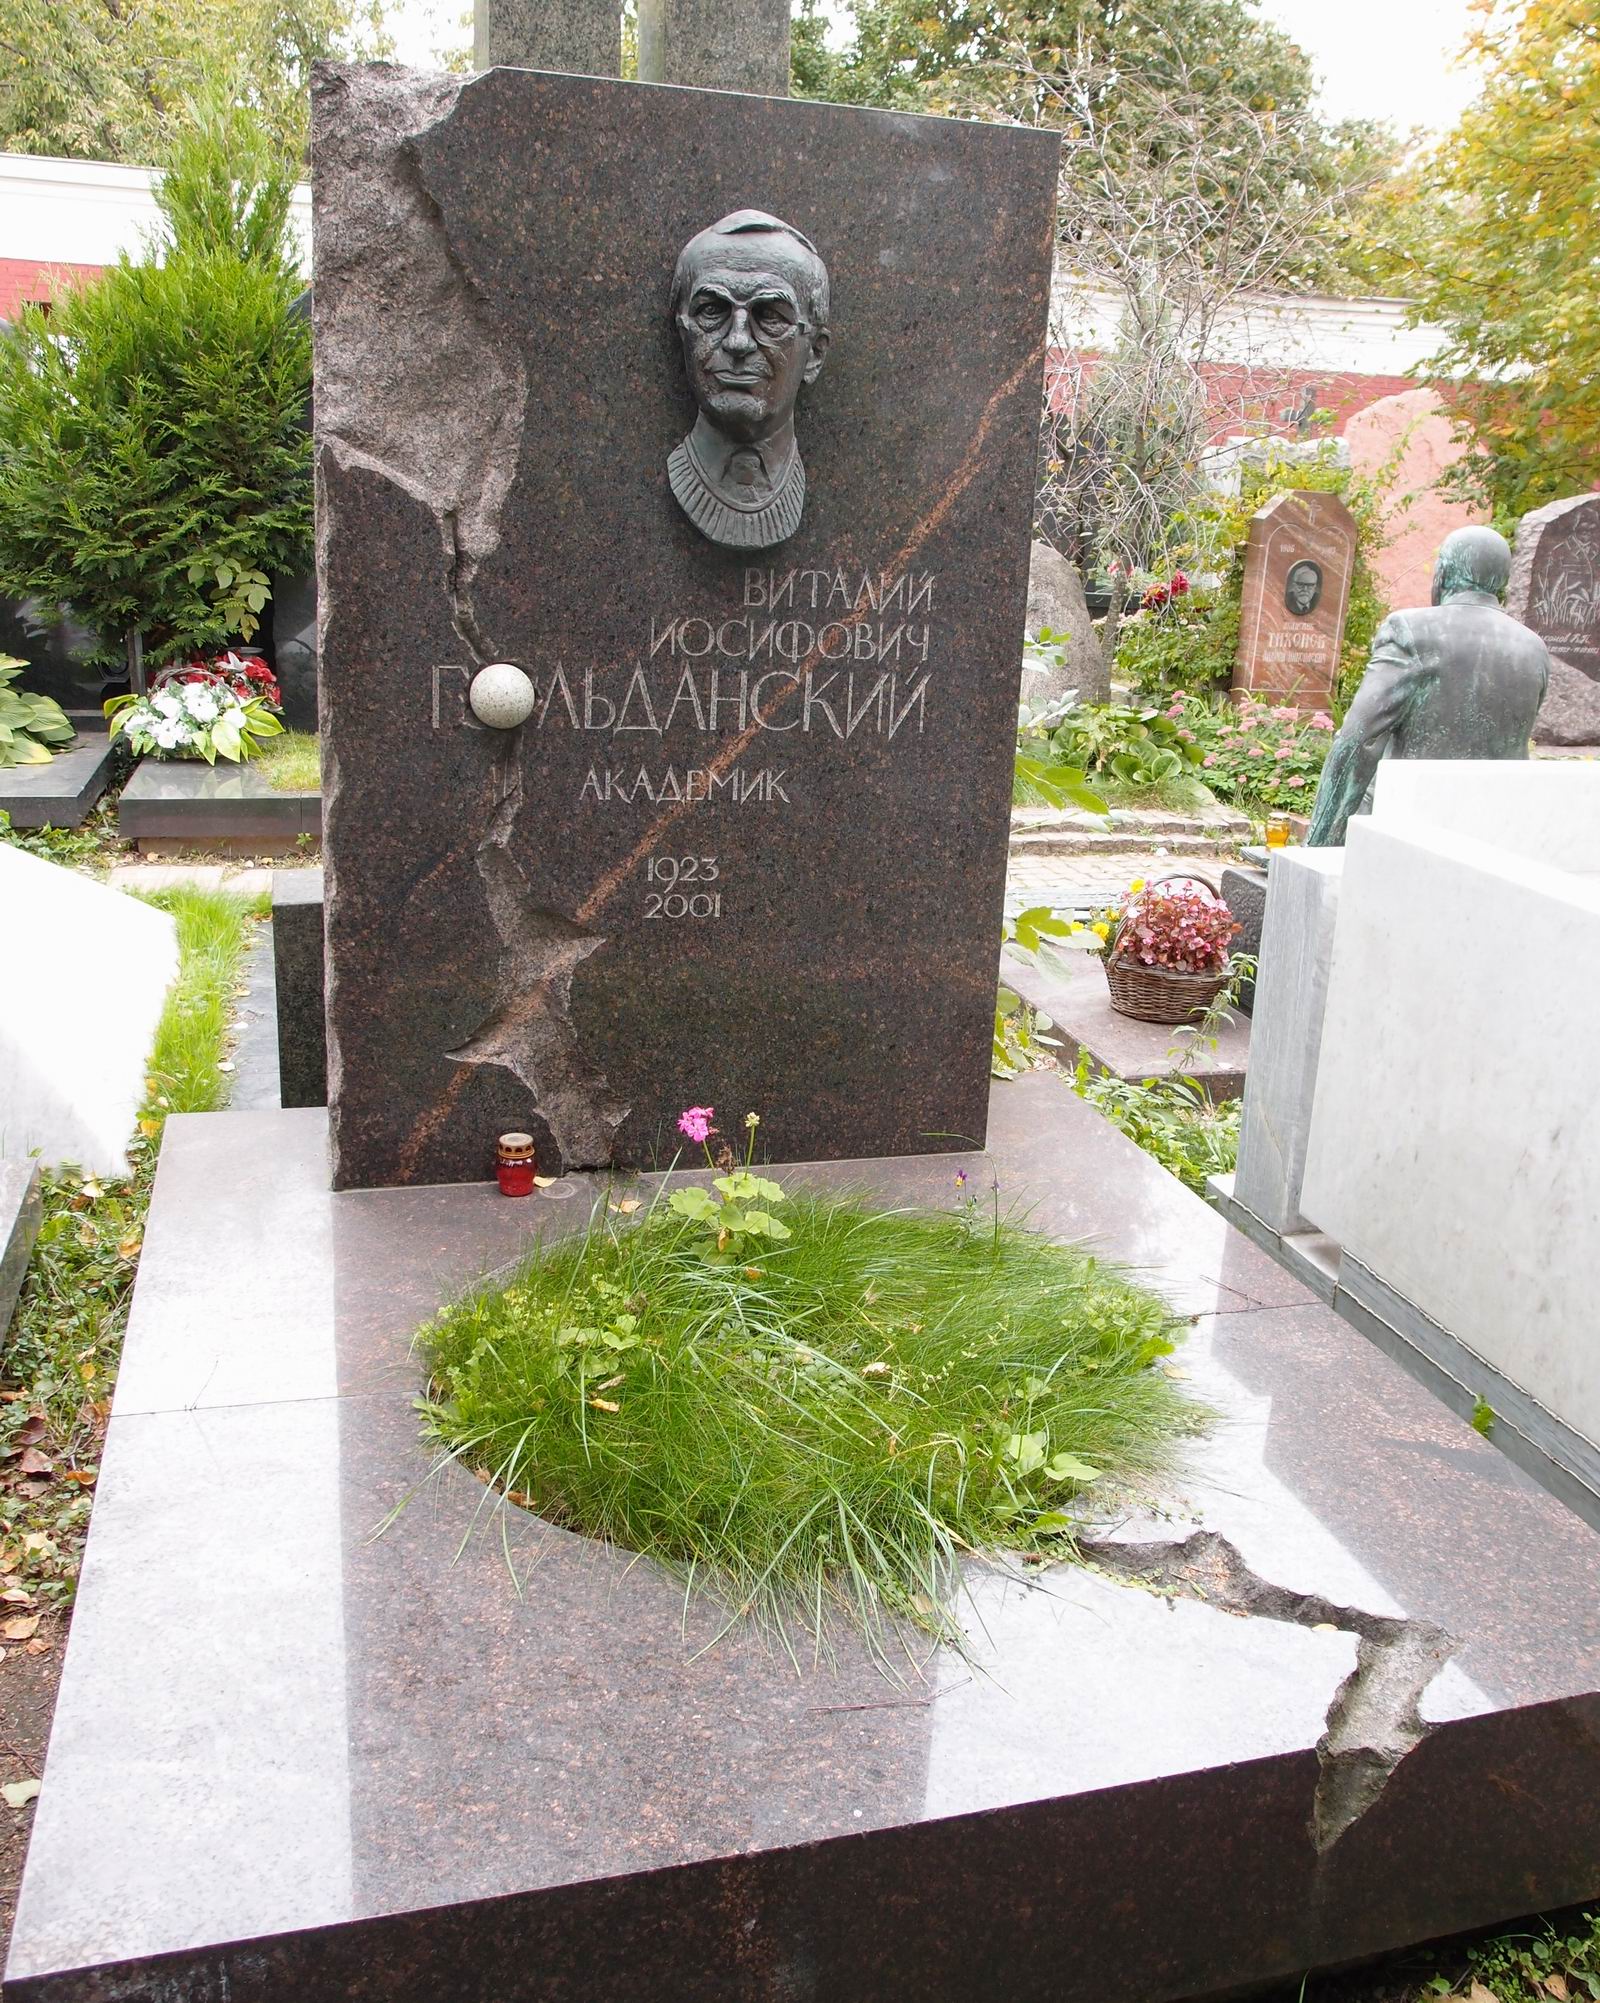 Памятник на могиле Гольданского В.И. (1923-2001), на Новодевичьем кладбище (10-5-19). Нажмите левую кнопку мыши чтобы увидеть фрагмент памятника.